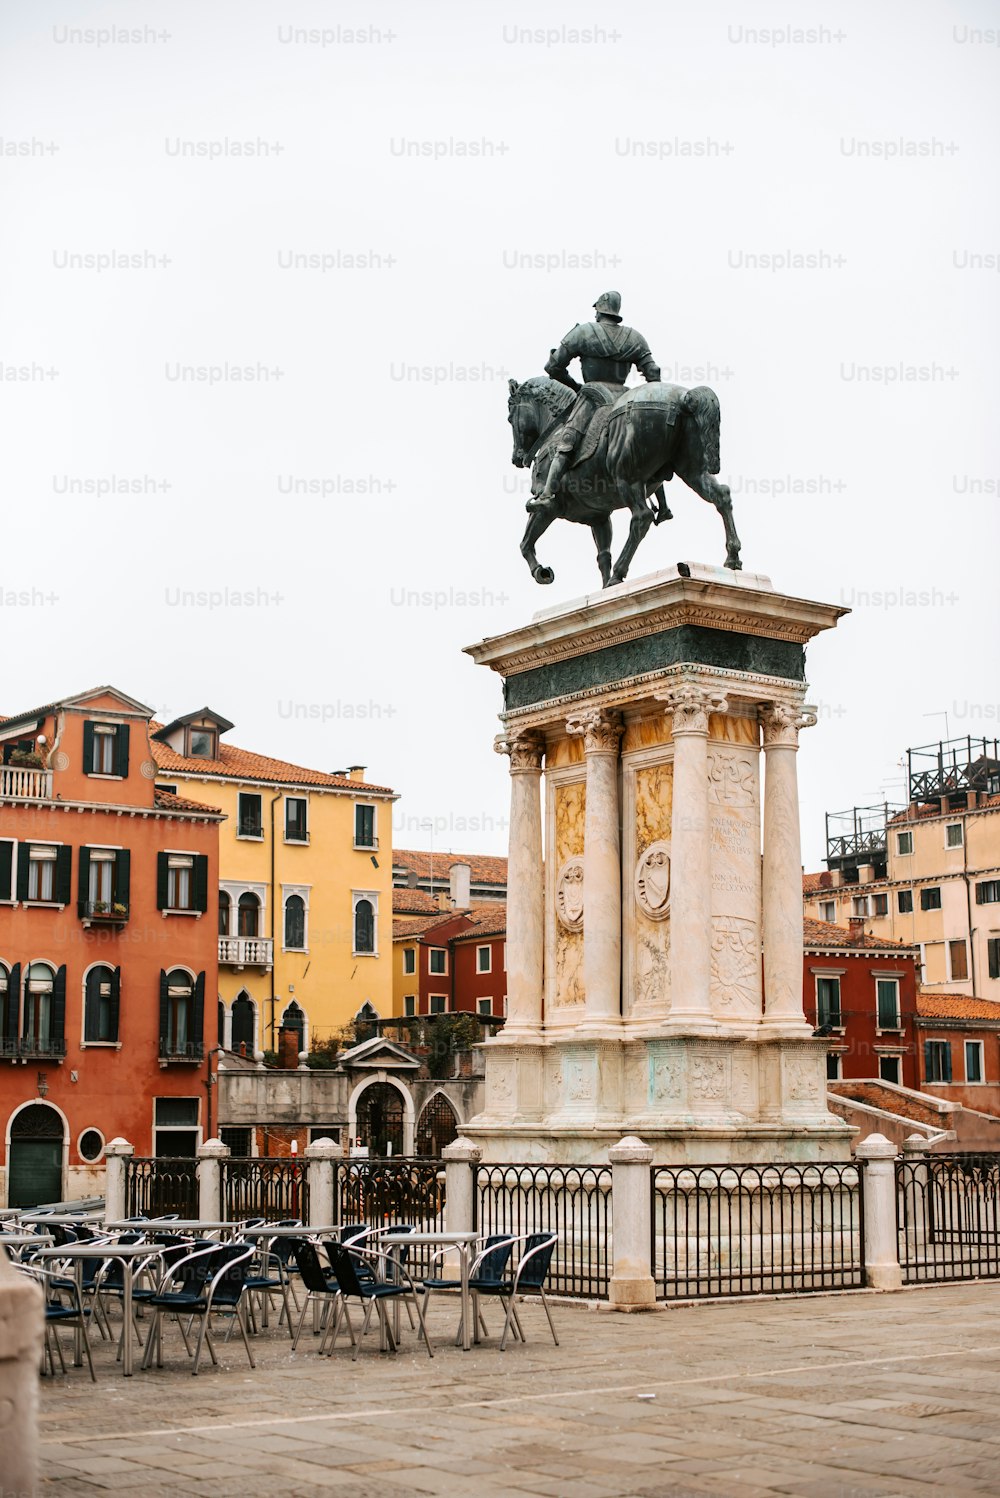 Una statua di un uomo che cavalca un cavallo in una piazza